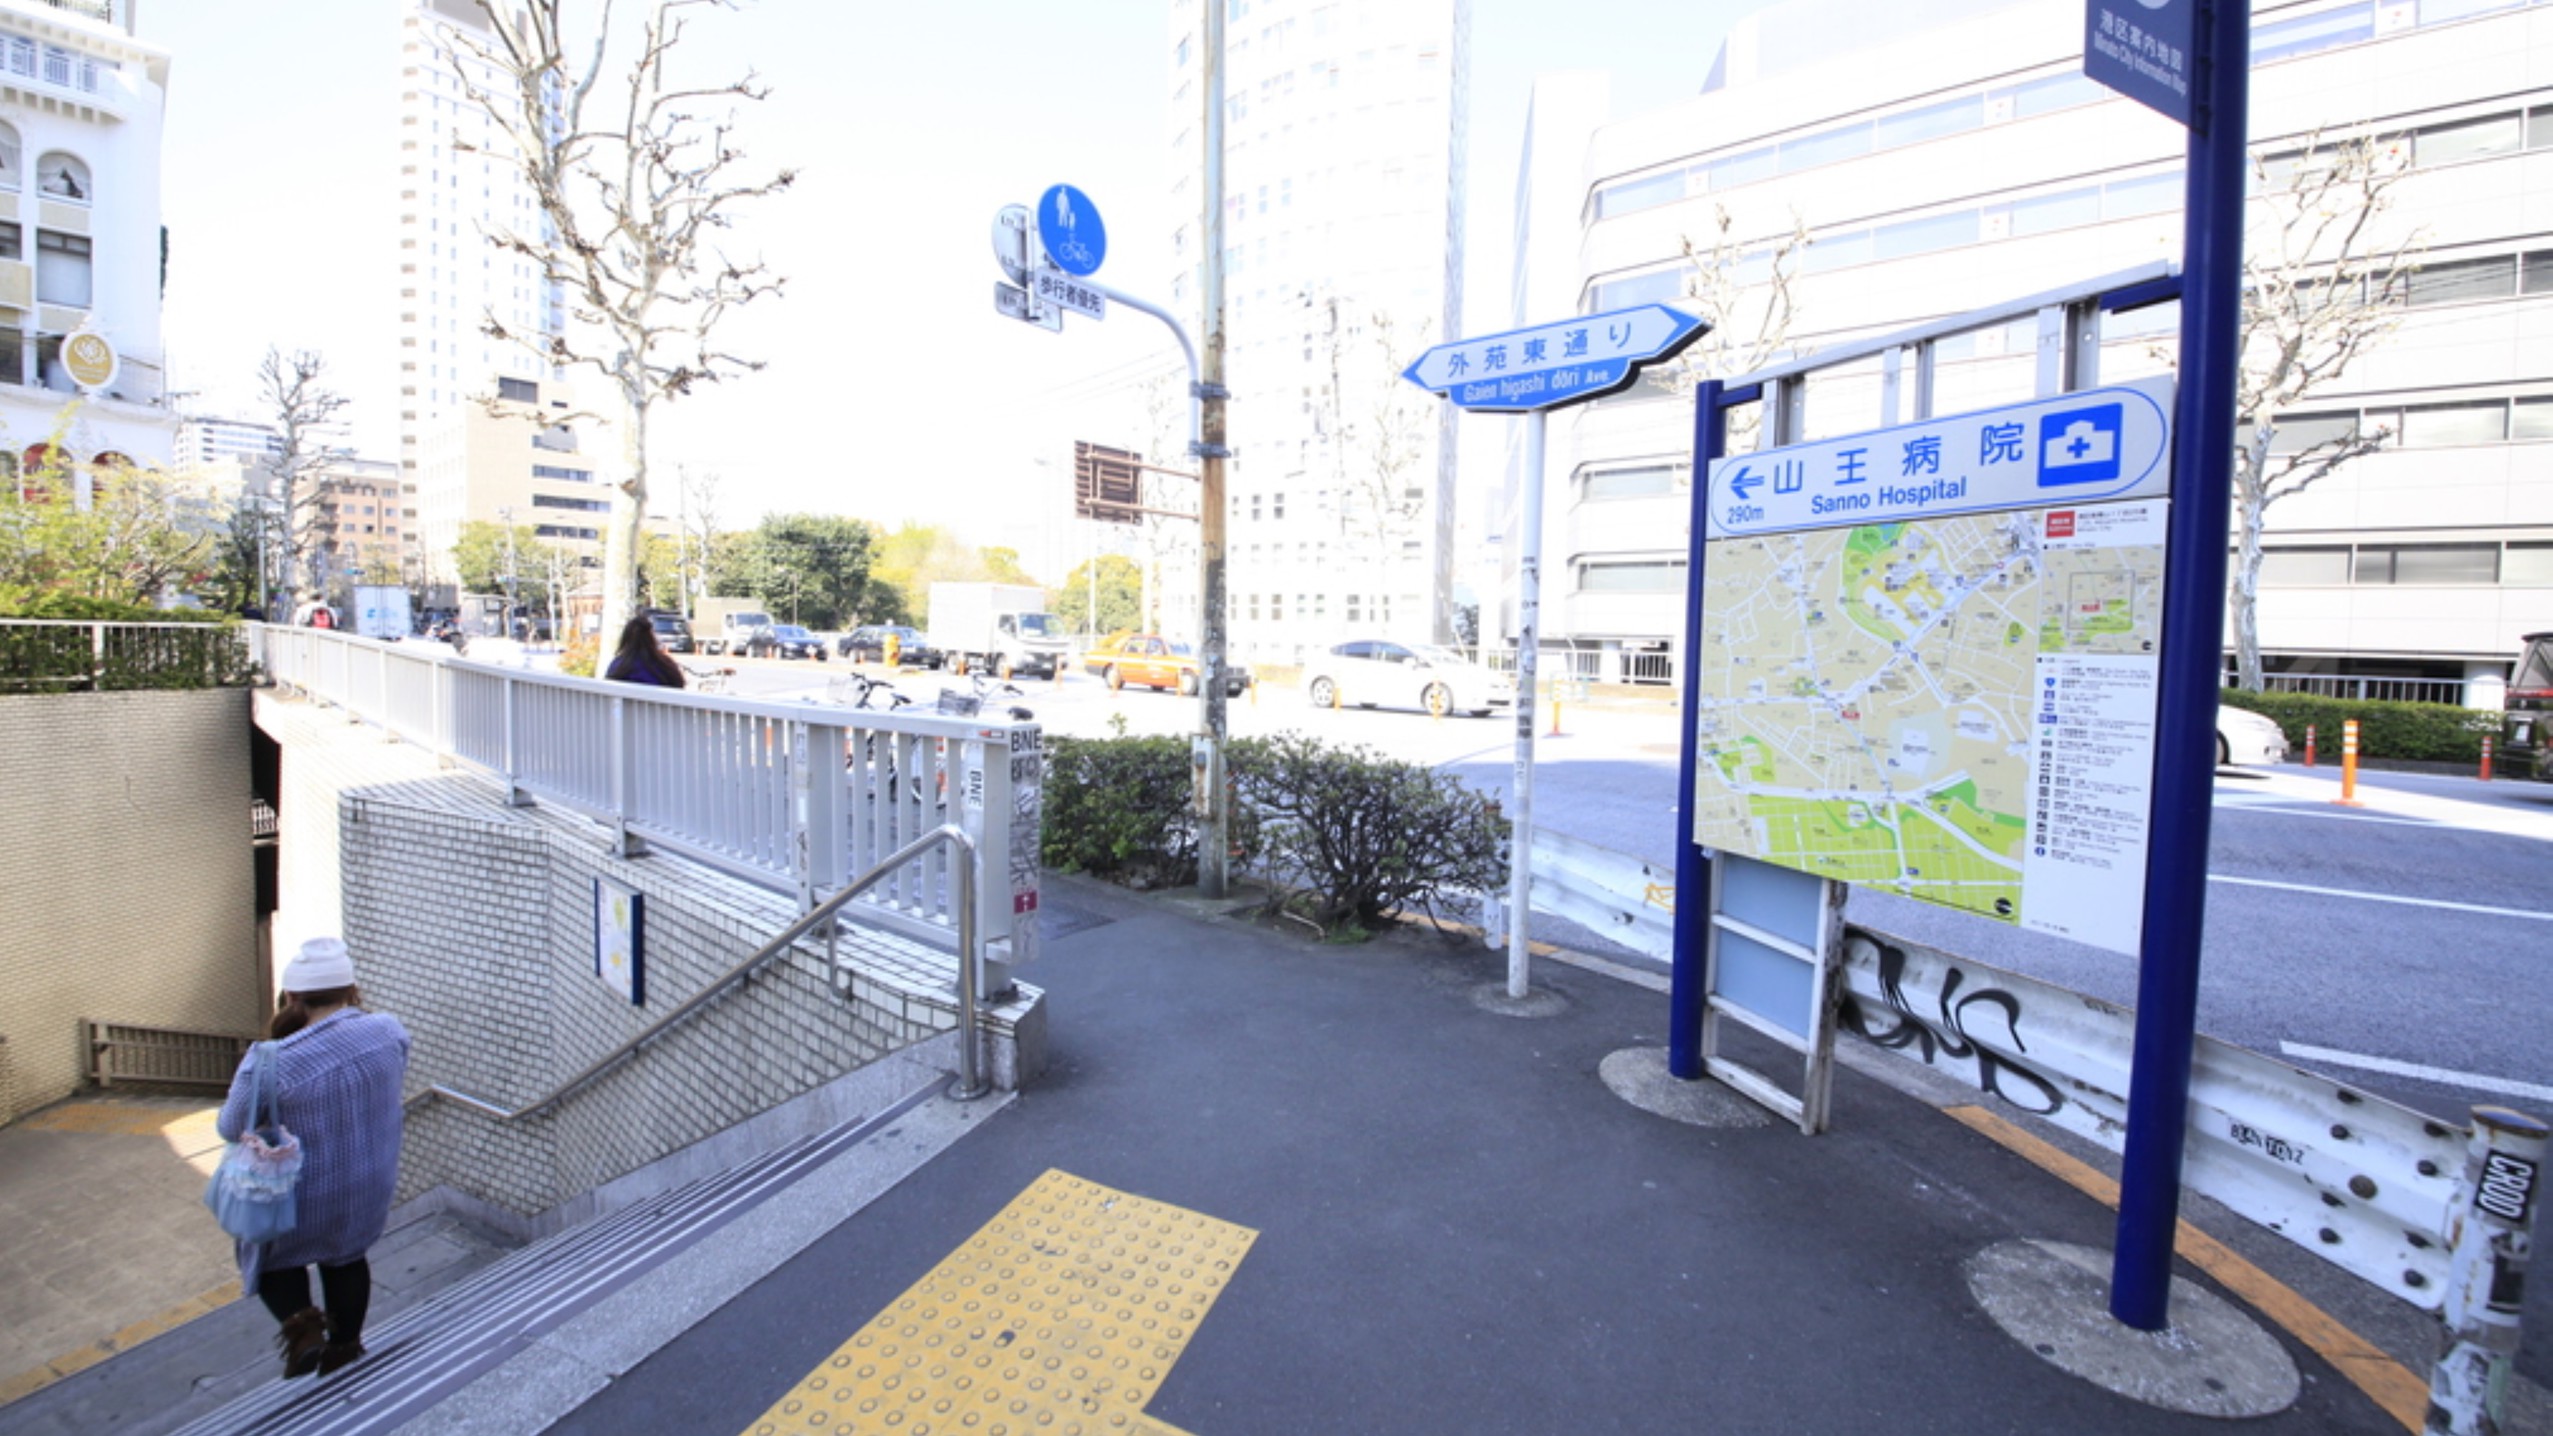 アクセス（乃木坂駅)①乃木坂駅3番出口の階段を上がり、左に進みます。